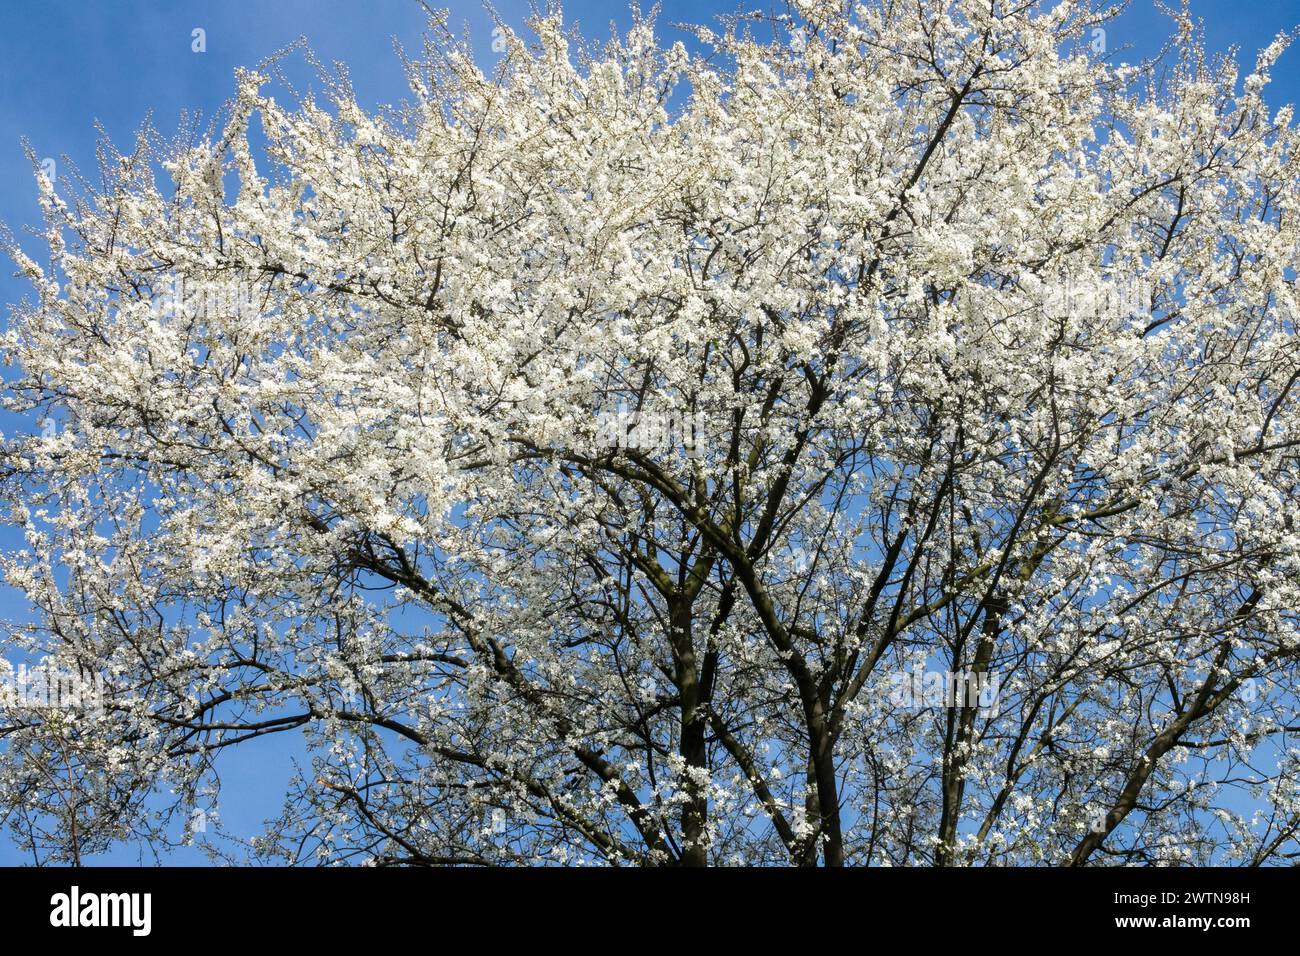 Weiße Blüten Zweige im frühen Frühjahr blühende Mirabelle Prunus domestica syriaca blühende Sträucher Zweige blühende März Prunus blüht Stockfoto